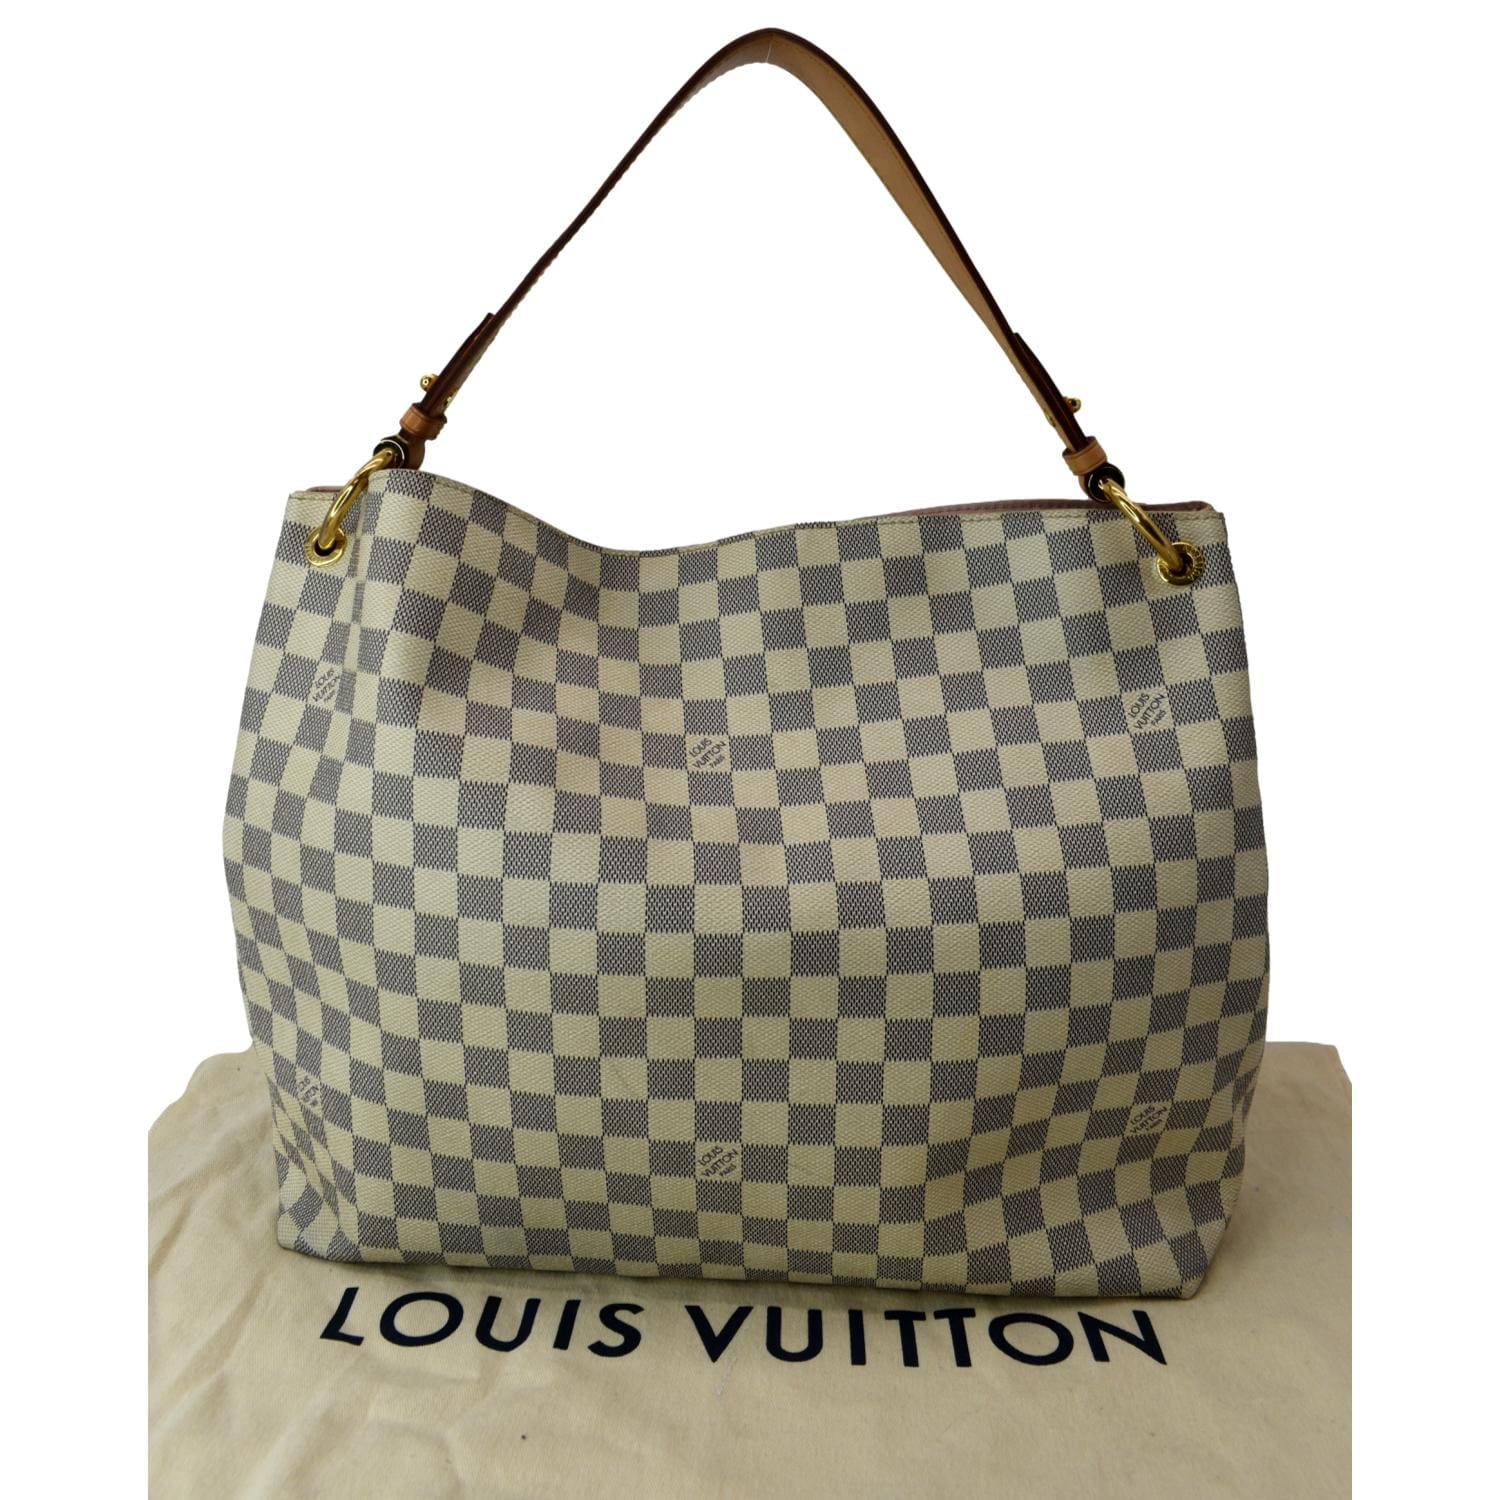 Louis Vuitton Damier Azur Graceful MM